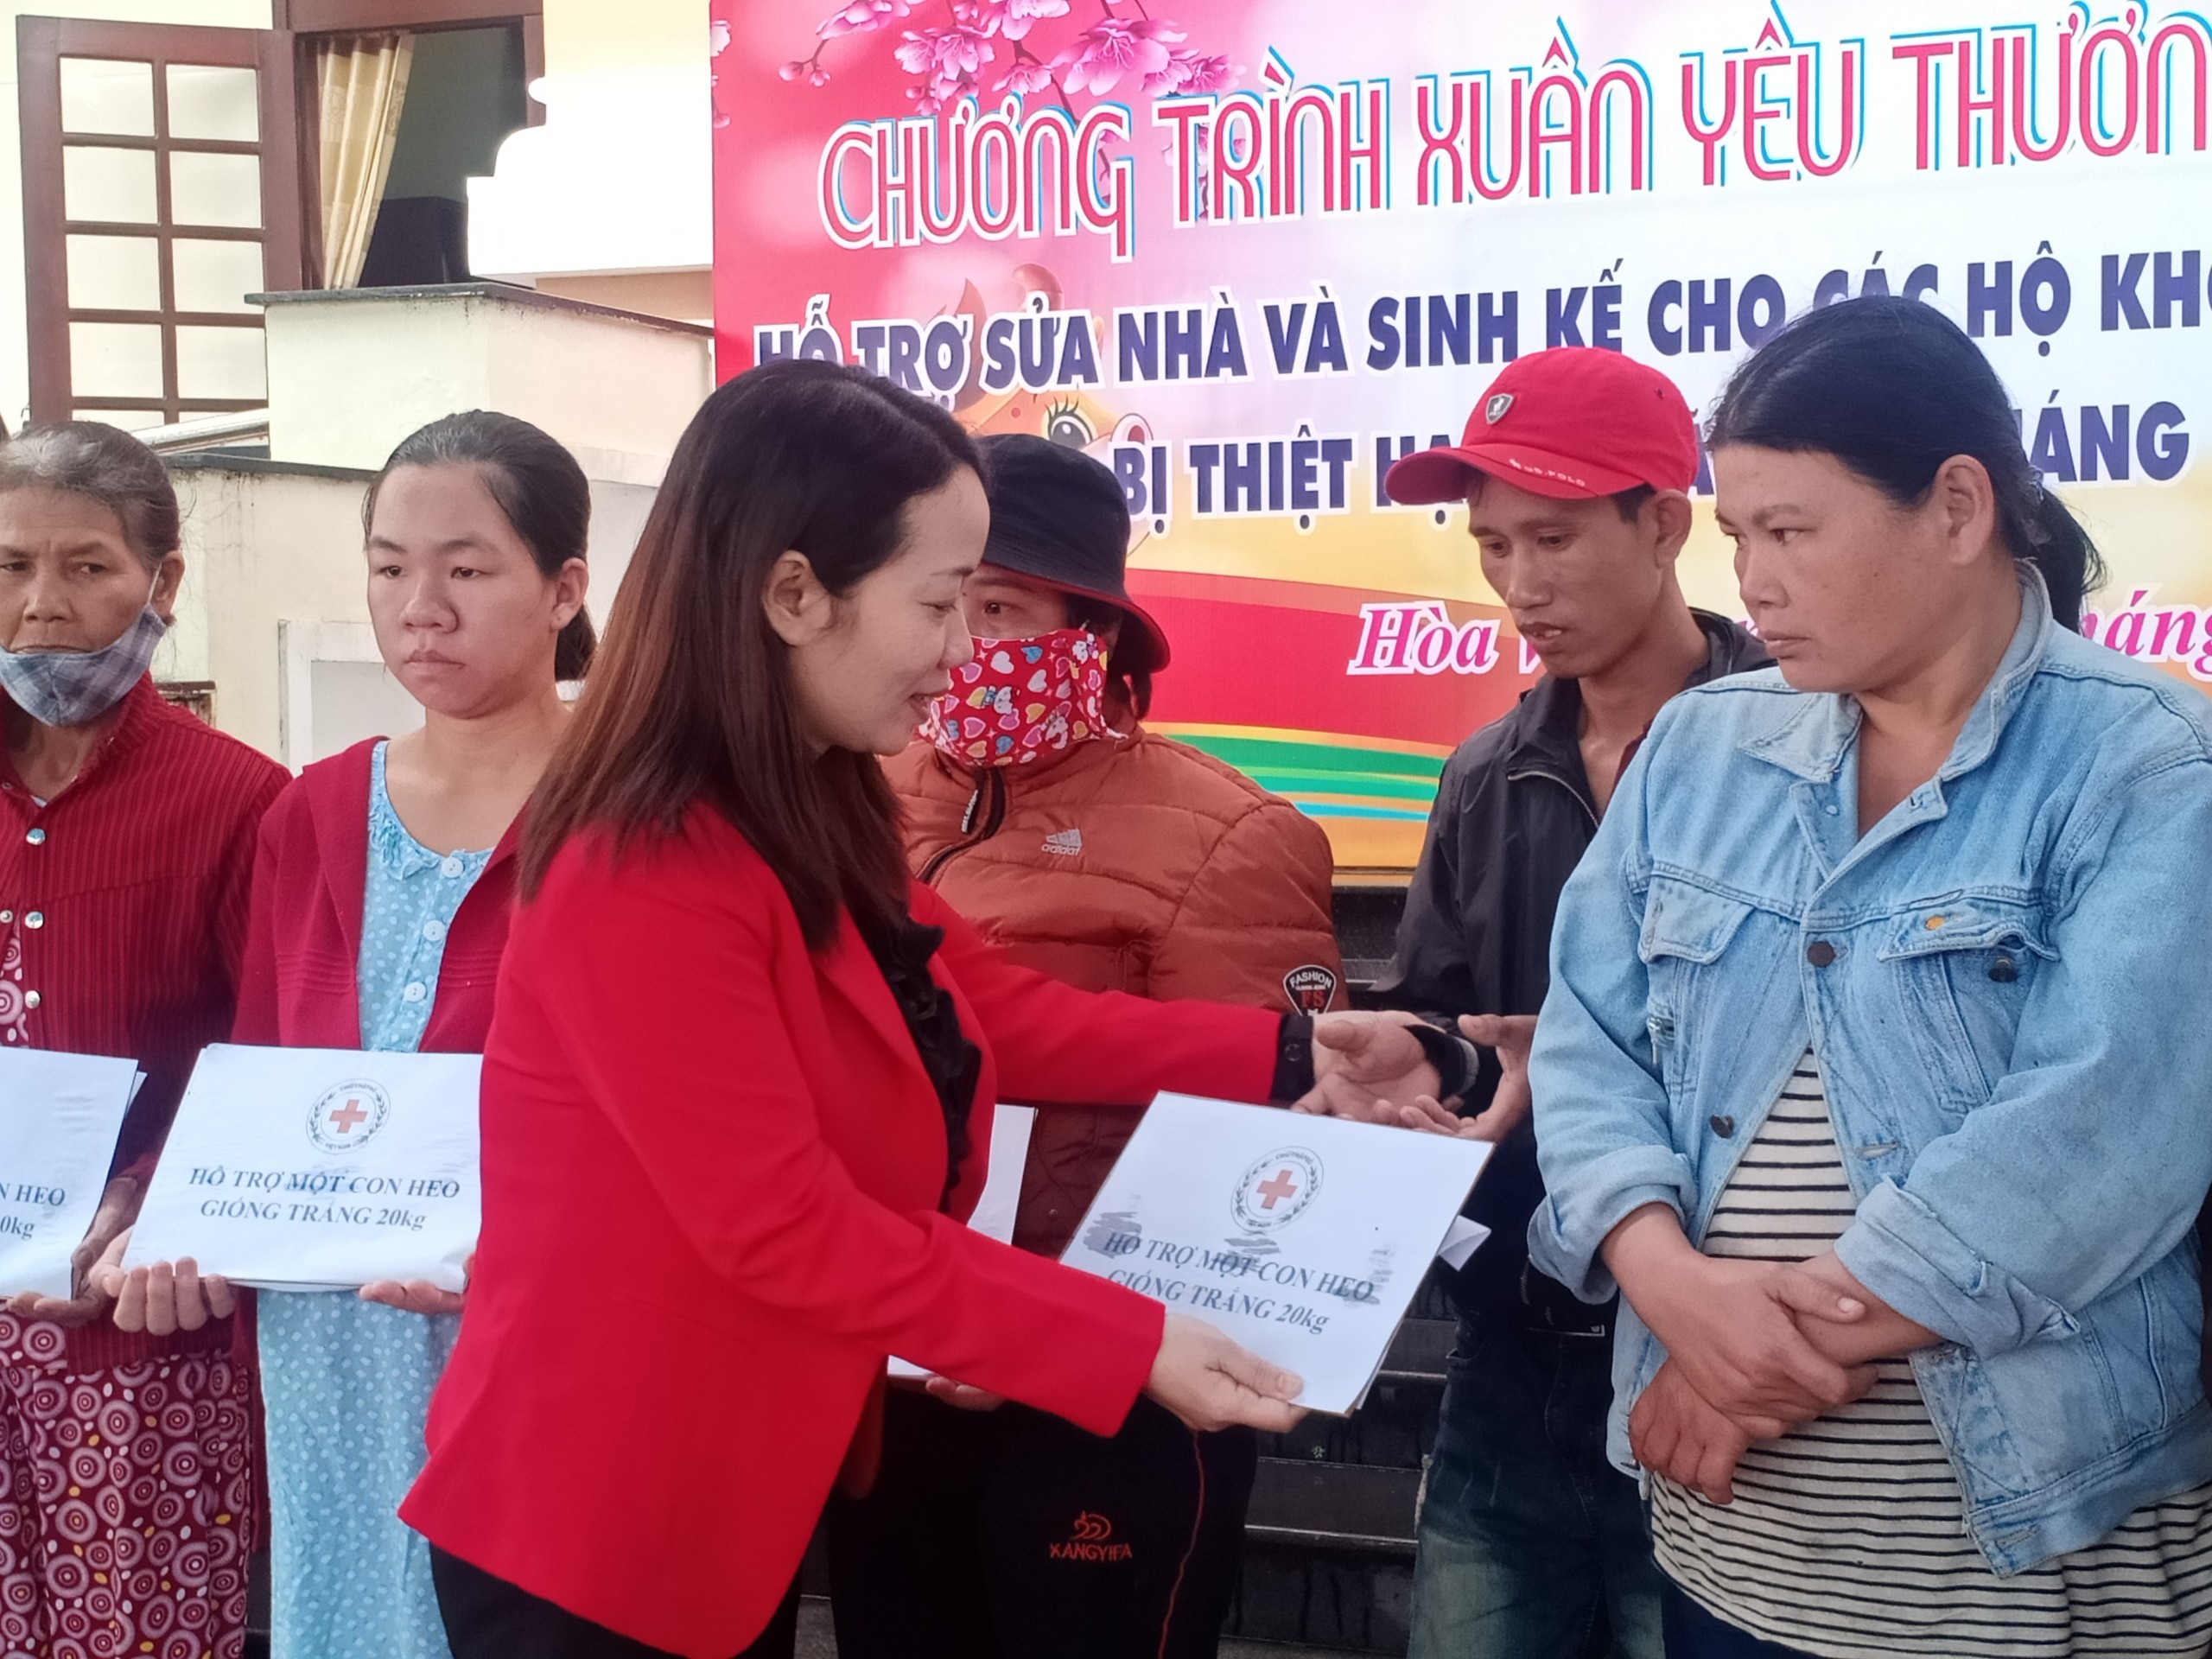 Đà Nẵng:  Chương trình Xuân yêu thương hỗ trợ người dân thiệt hại do thiên tai